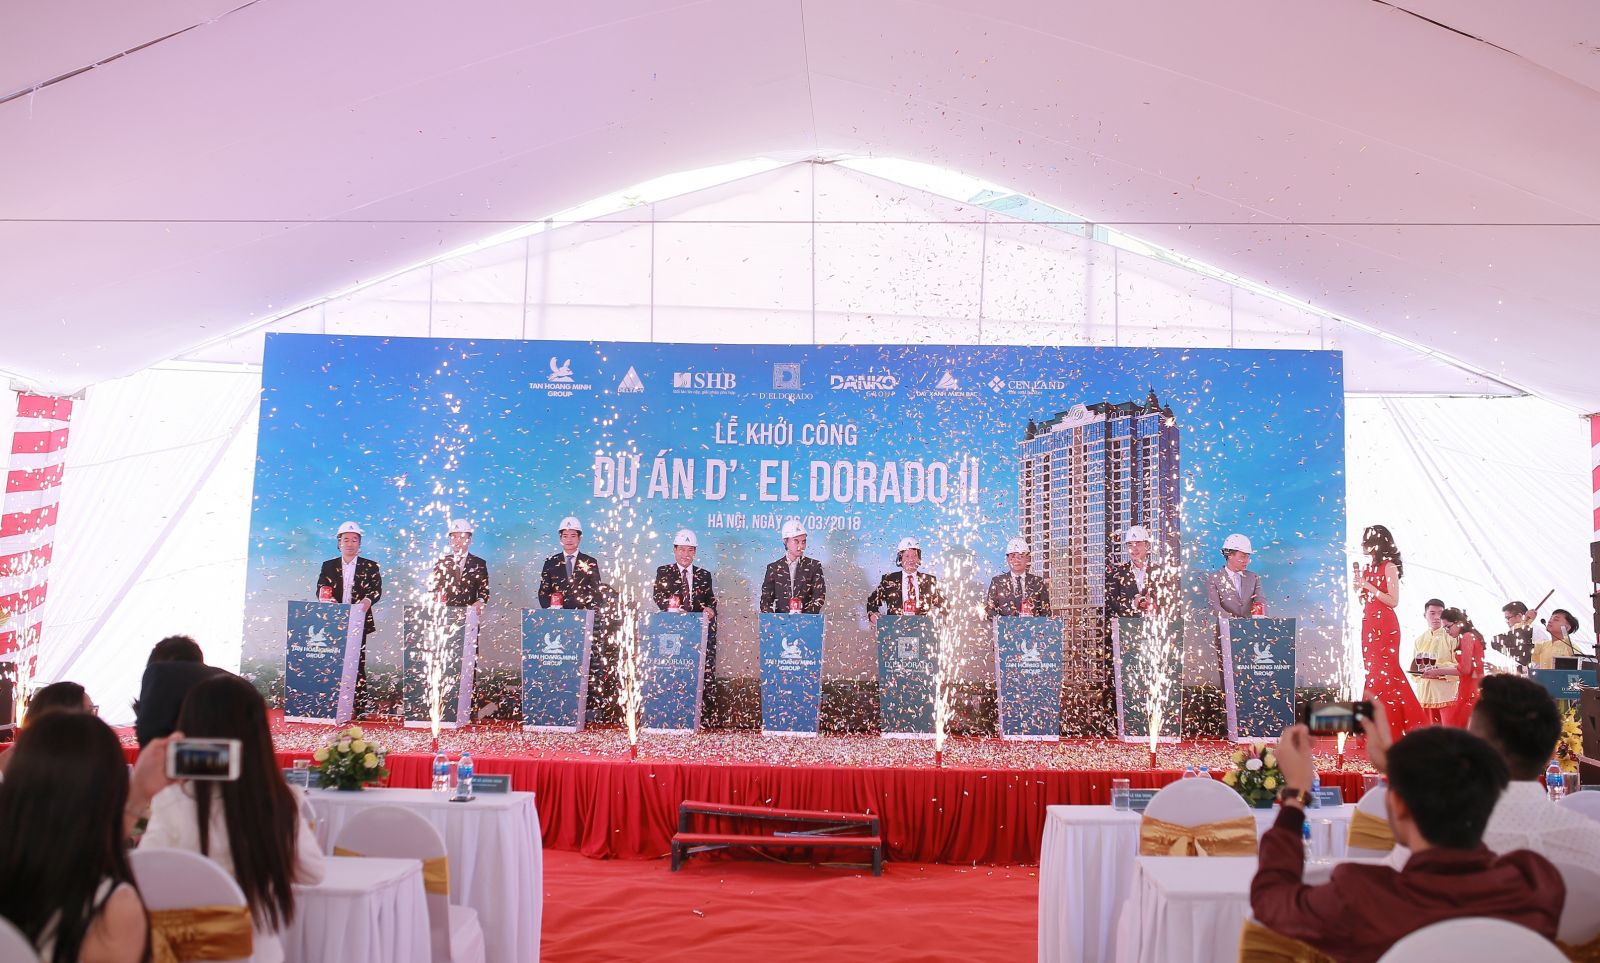 Đại diện Chủ đầu tư và các đối tác thực hiện nghi thức khởi công dự án D’. El Dorado II